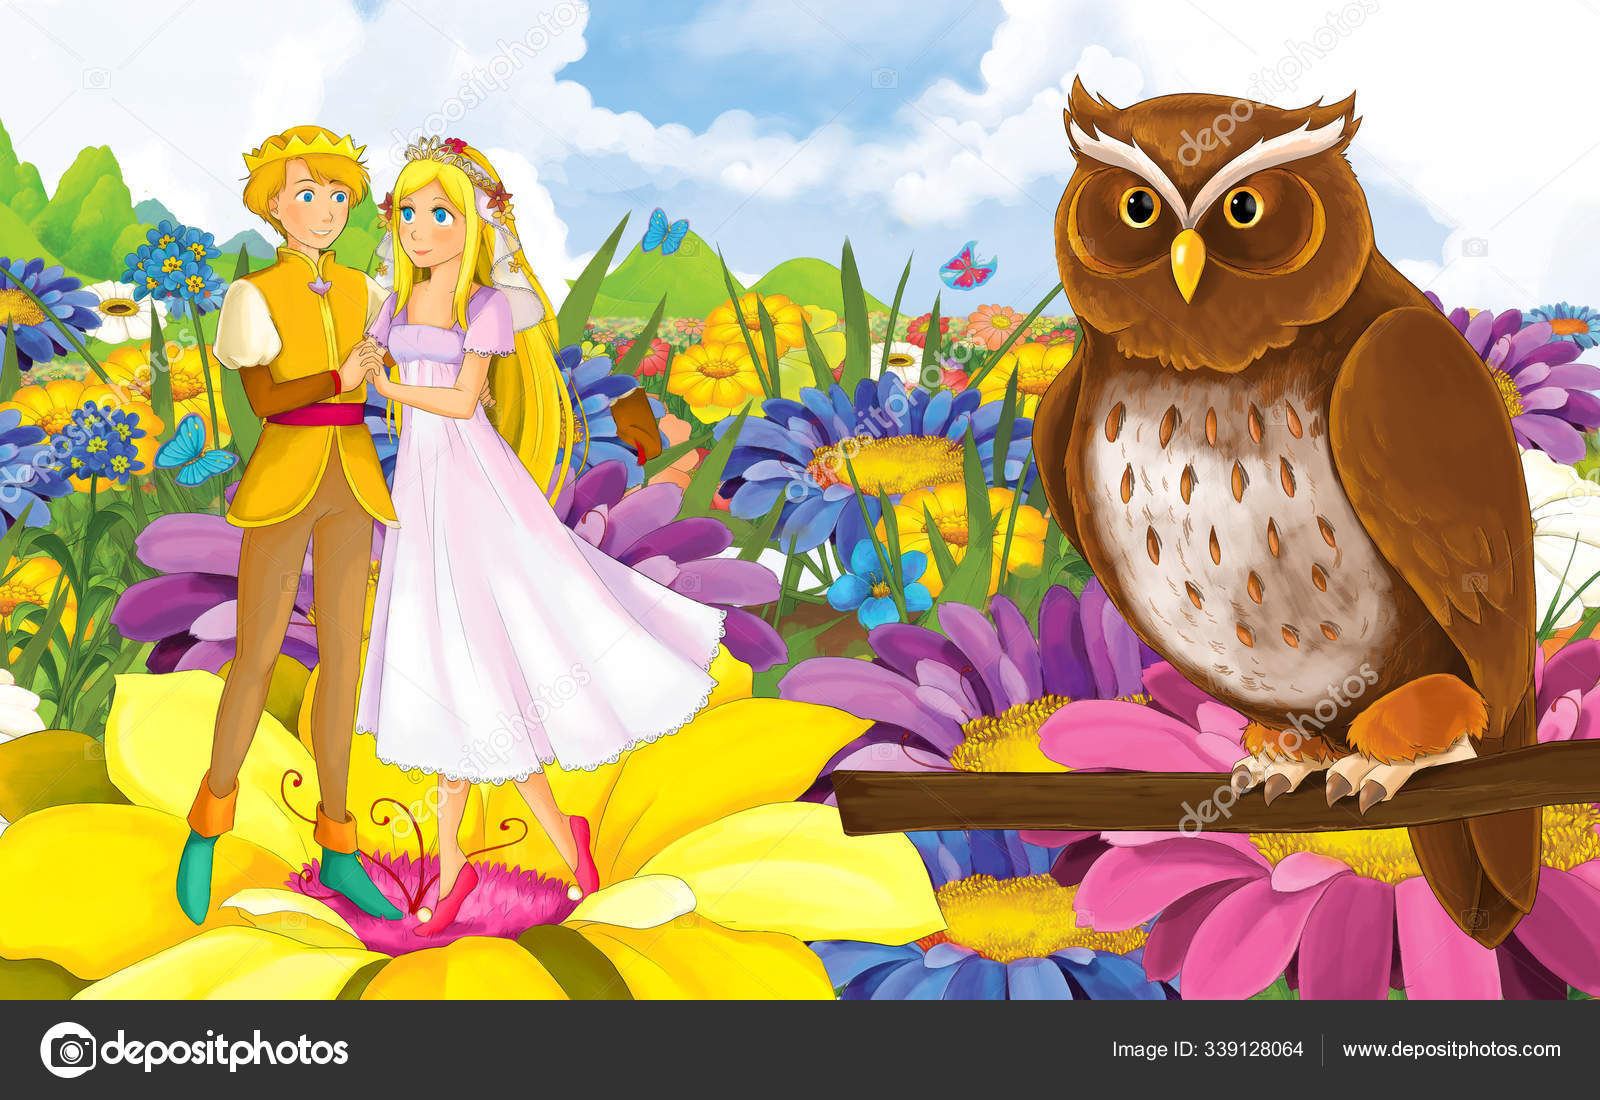 幼い美少女姫と王子と野生の鳥との漫画シーン ストック写真 C Illustrator Hft